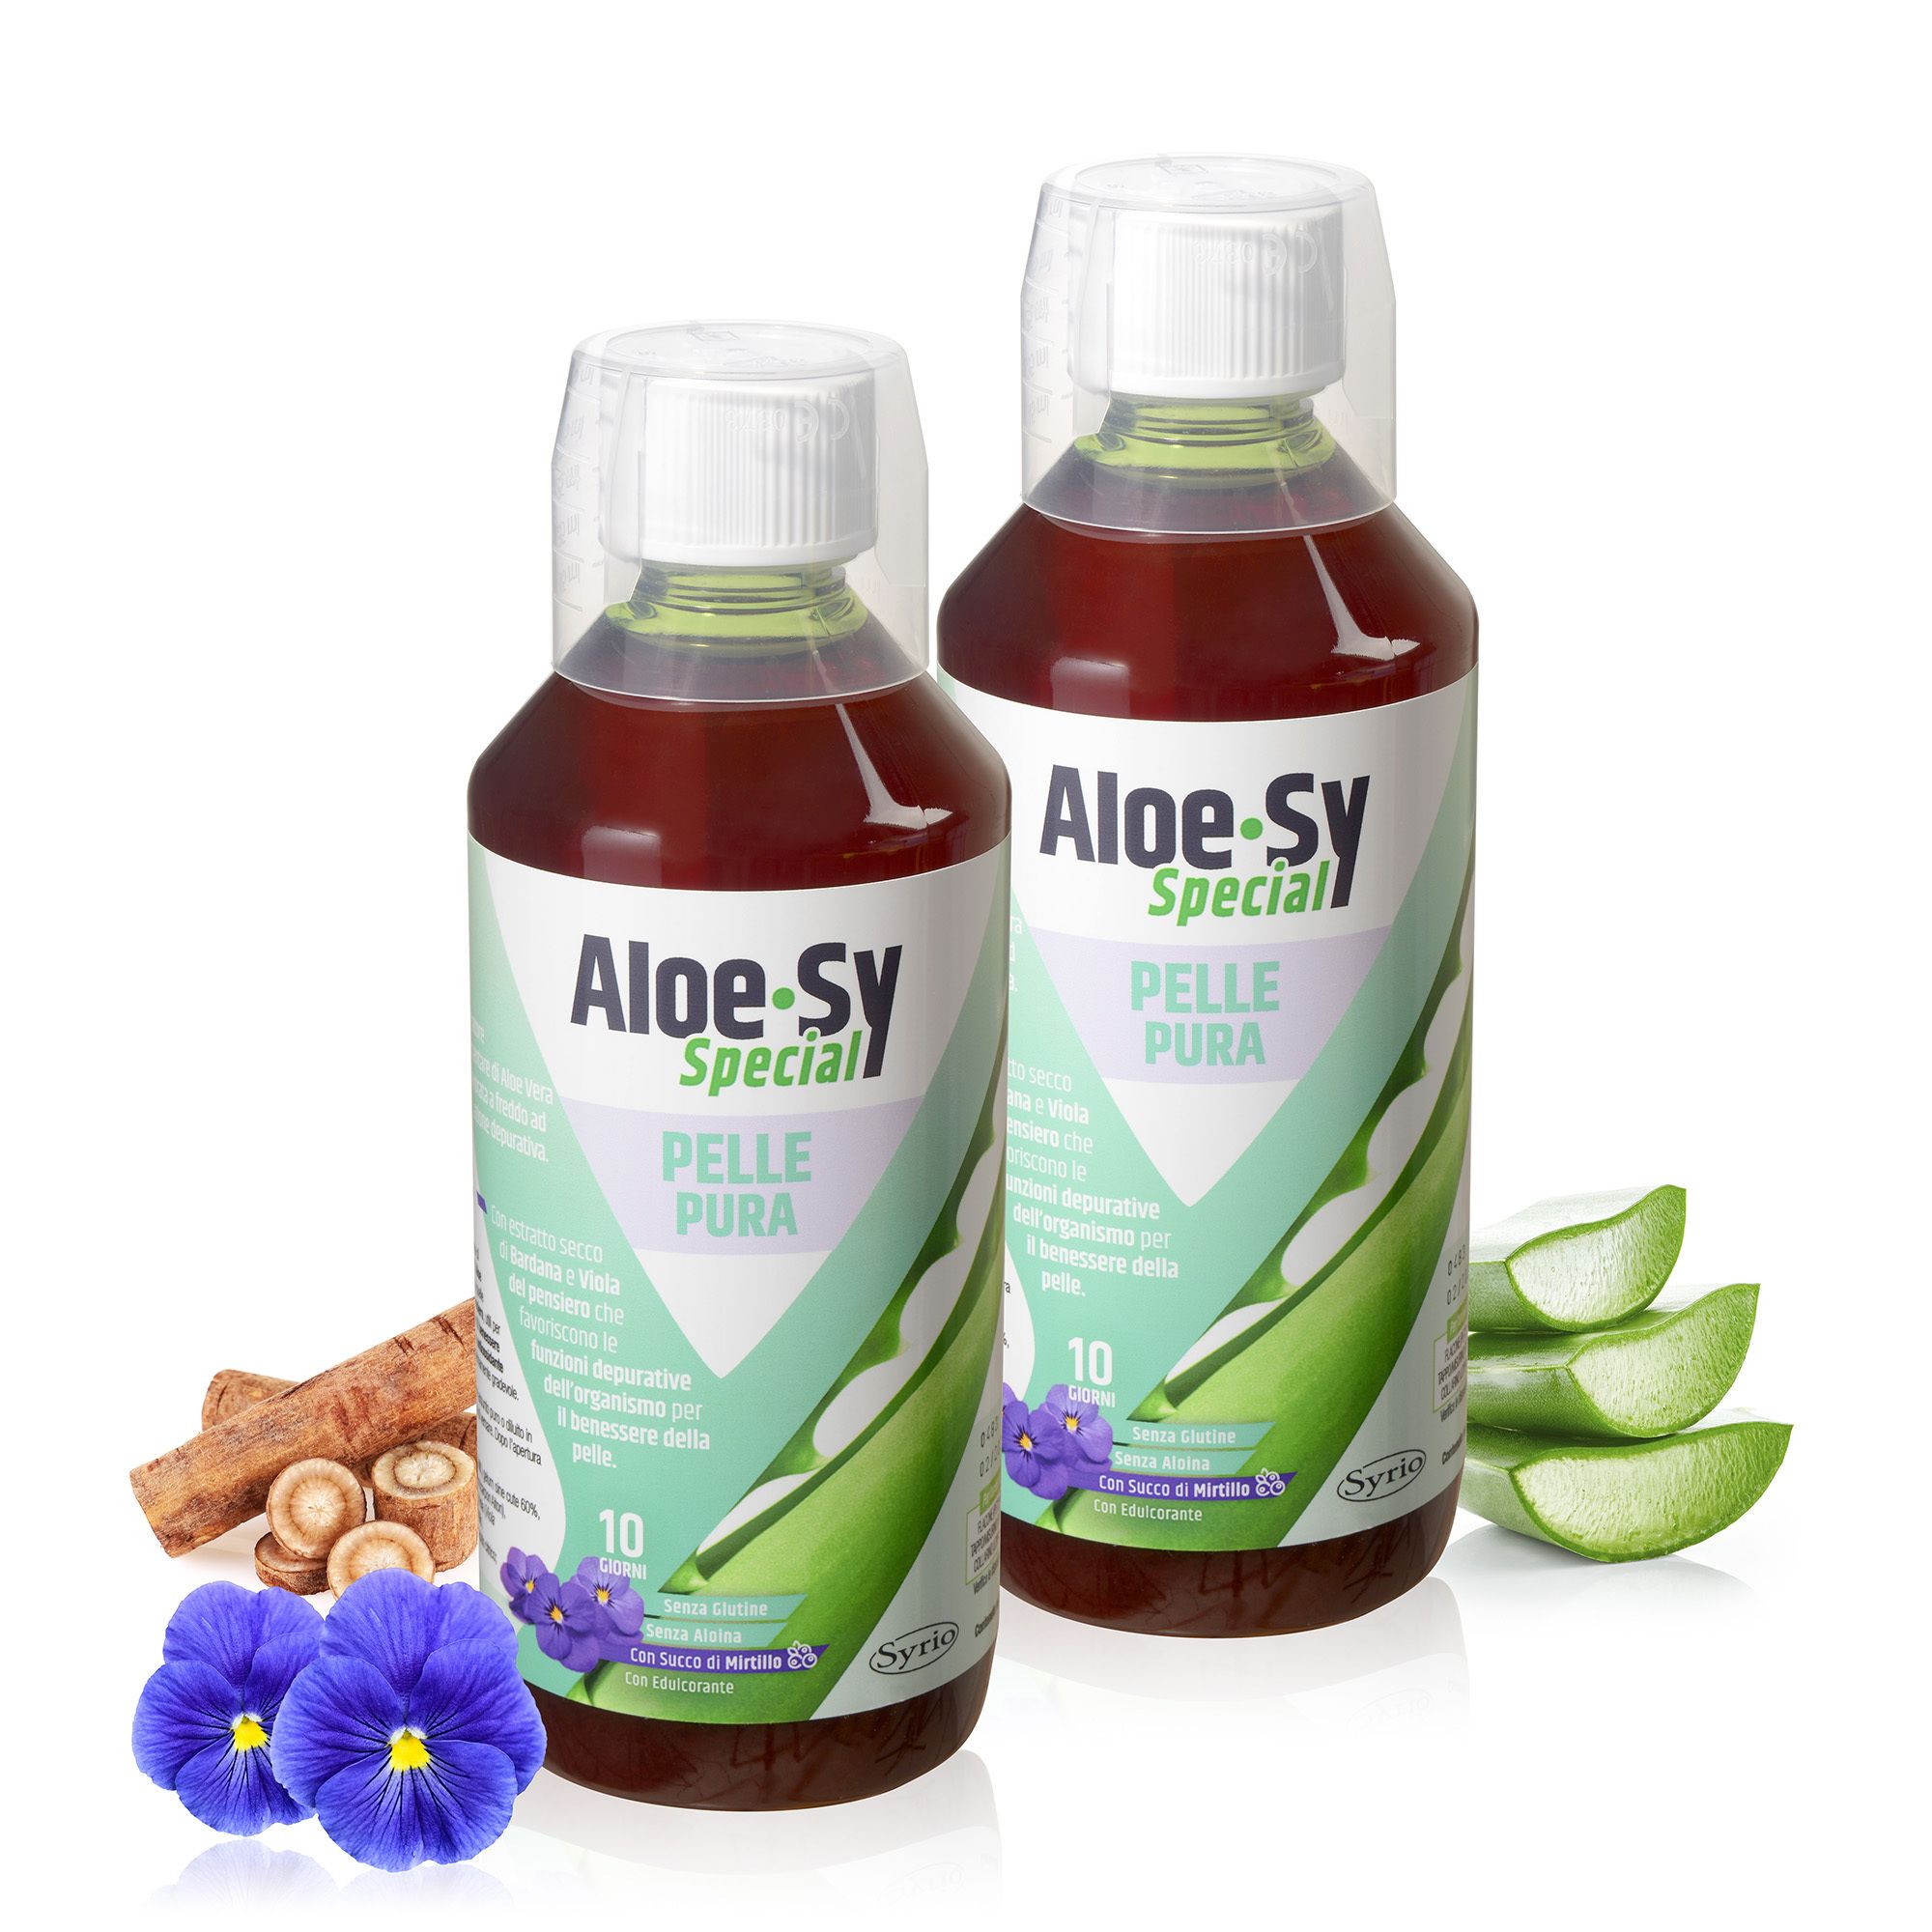 Image of Aloe-Sy Special pelle pura, integratore alimentare